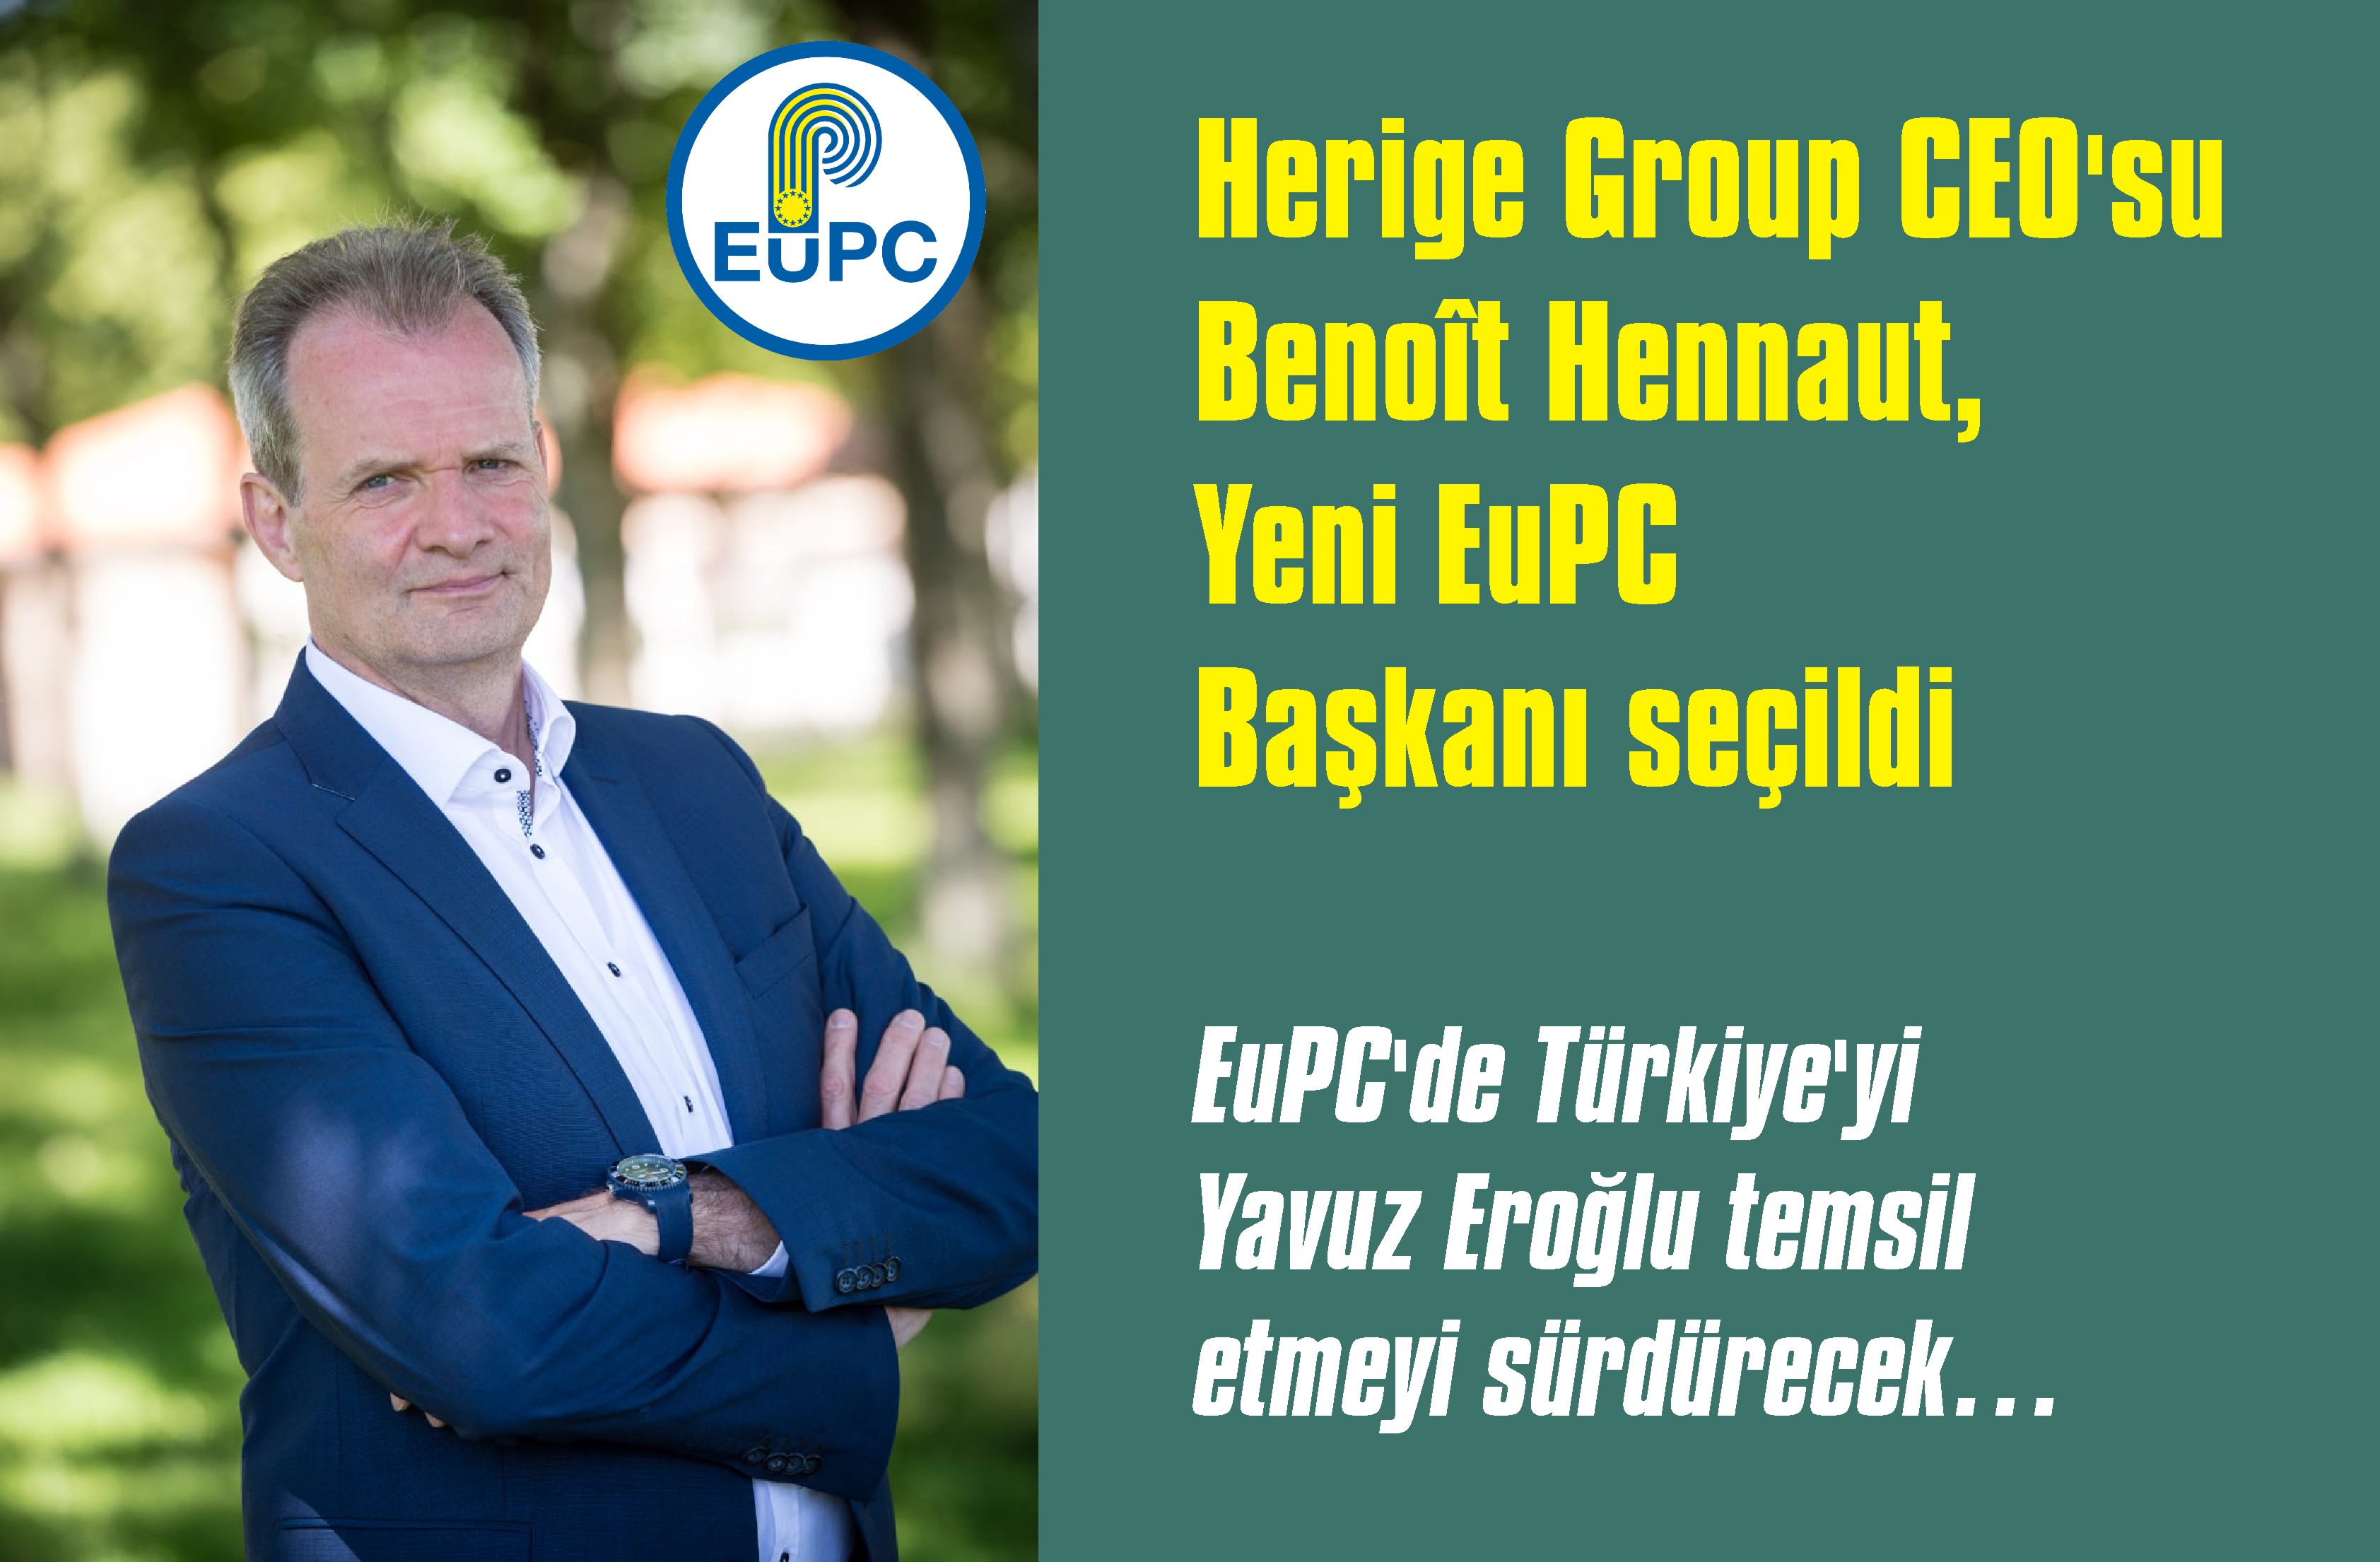 Benoît Hennaut, yeni EuPC (Avrupa Birliği Plastik Mamül Üreticileri Derneği) Başkanı seçildi